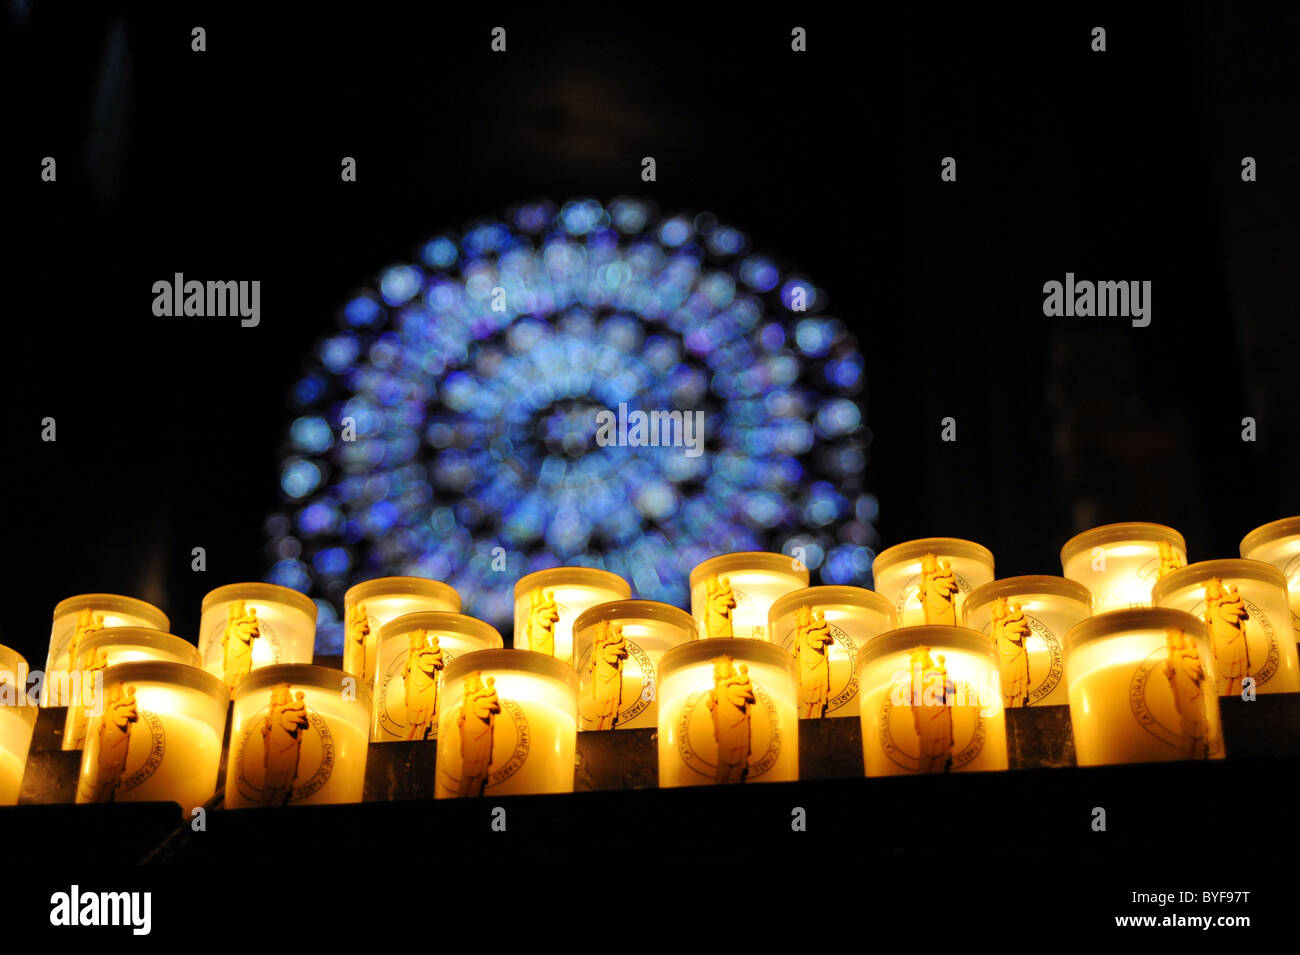 Kerzen brennen vor dem Norden Rosette, die Kathedrale Notre Dame, Paris, Frankreich Stockfoto